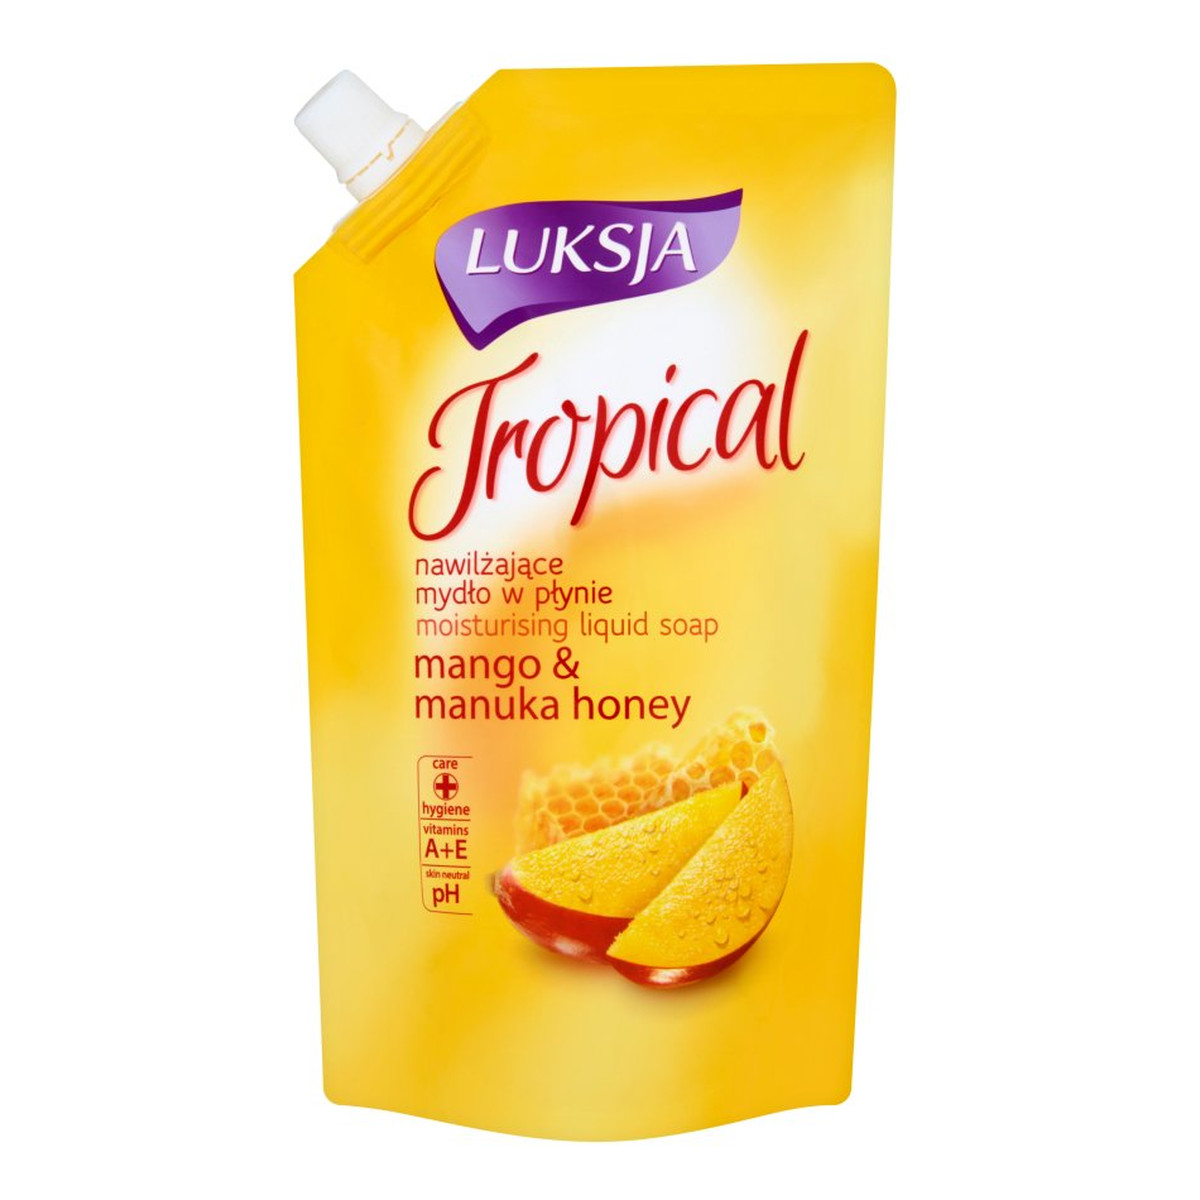 Luksja Tropical Mango & Manuka Honey Nawilżające mydło w płynie zapas 400ml